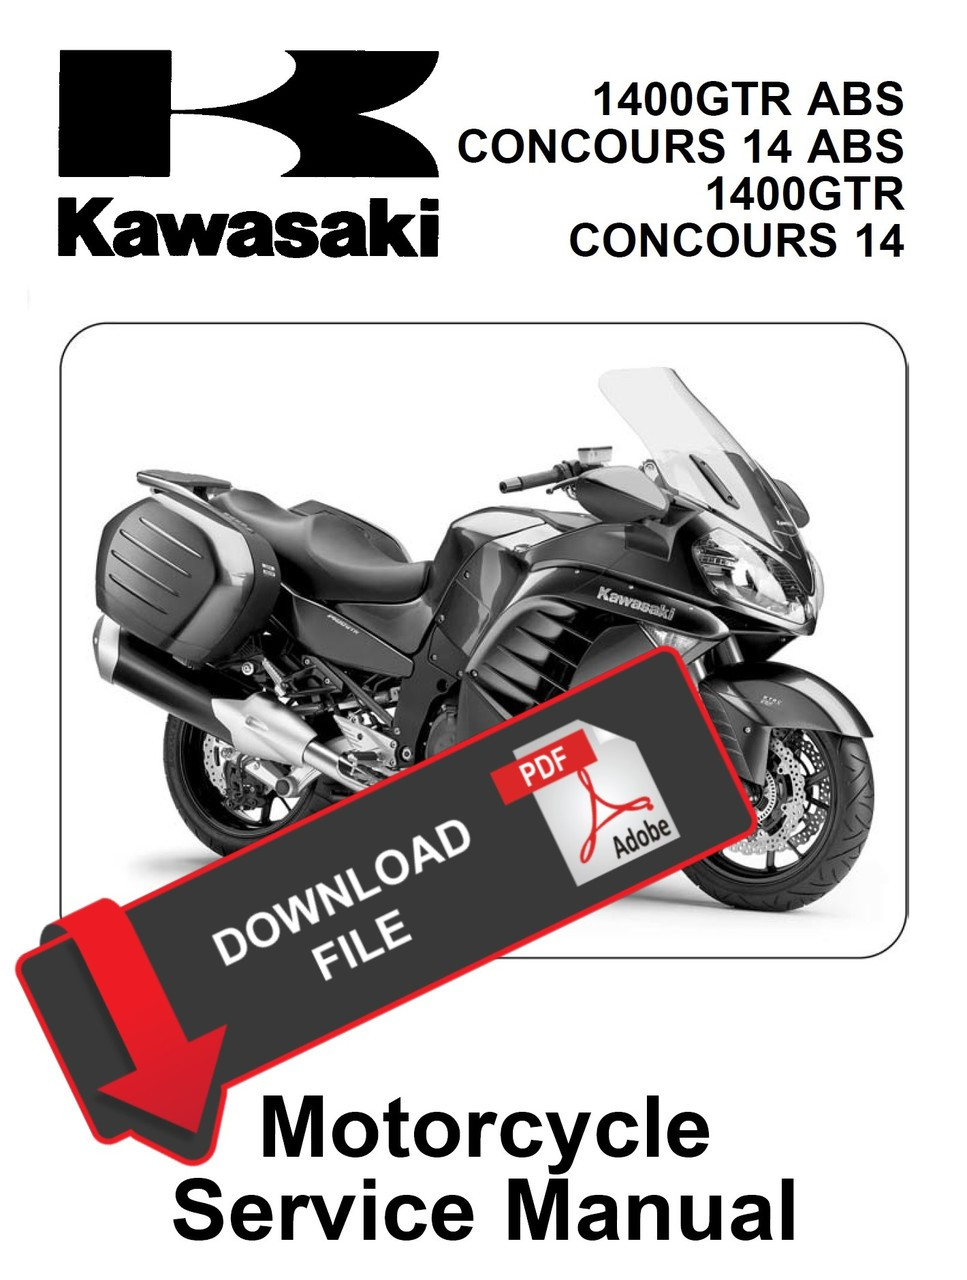 Kawasaki 2014 1400GTR Service